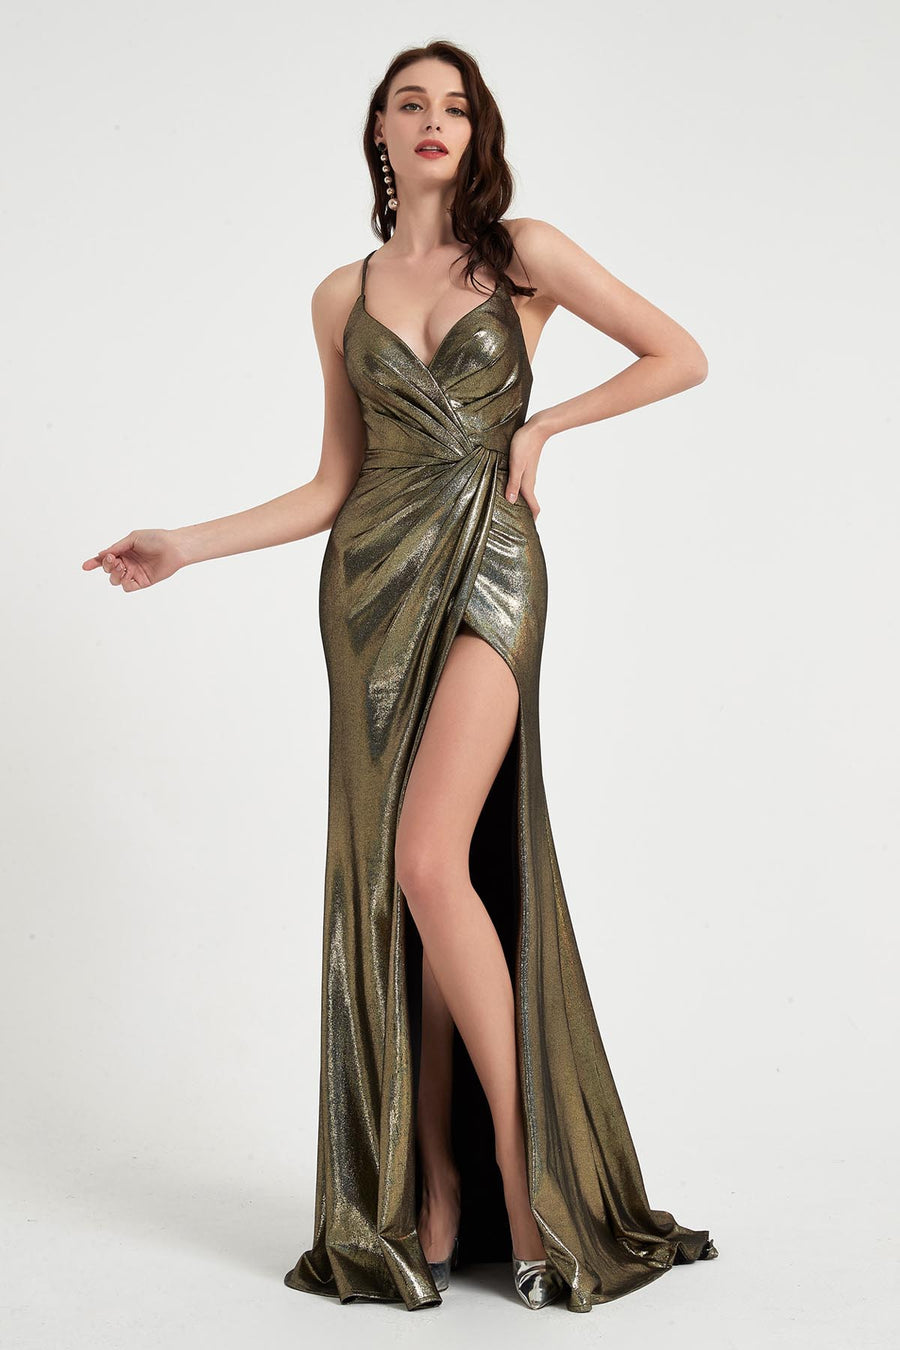 Mermaid/Trumpet Spaghetti-straps Sleeveless Full Length Polyester Promo Dresses